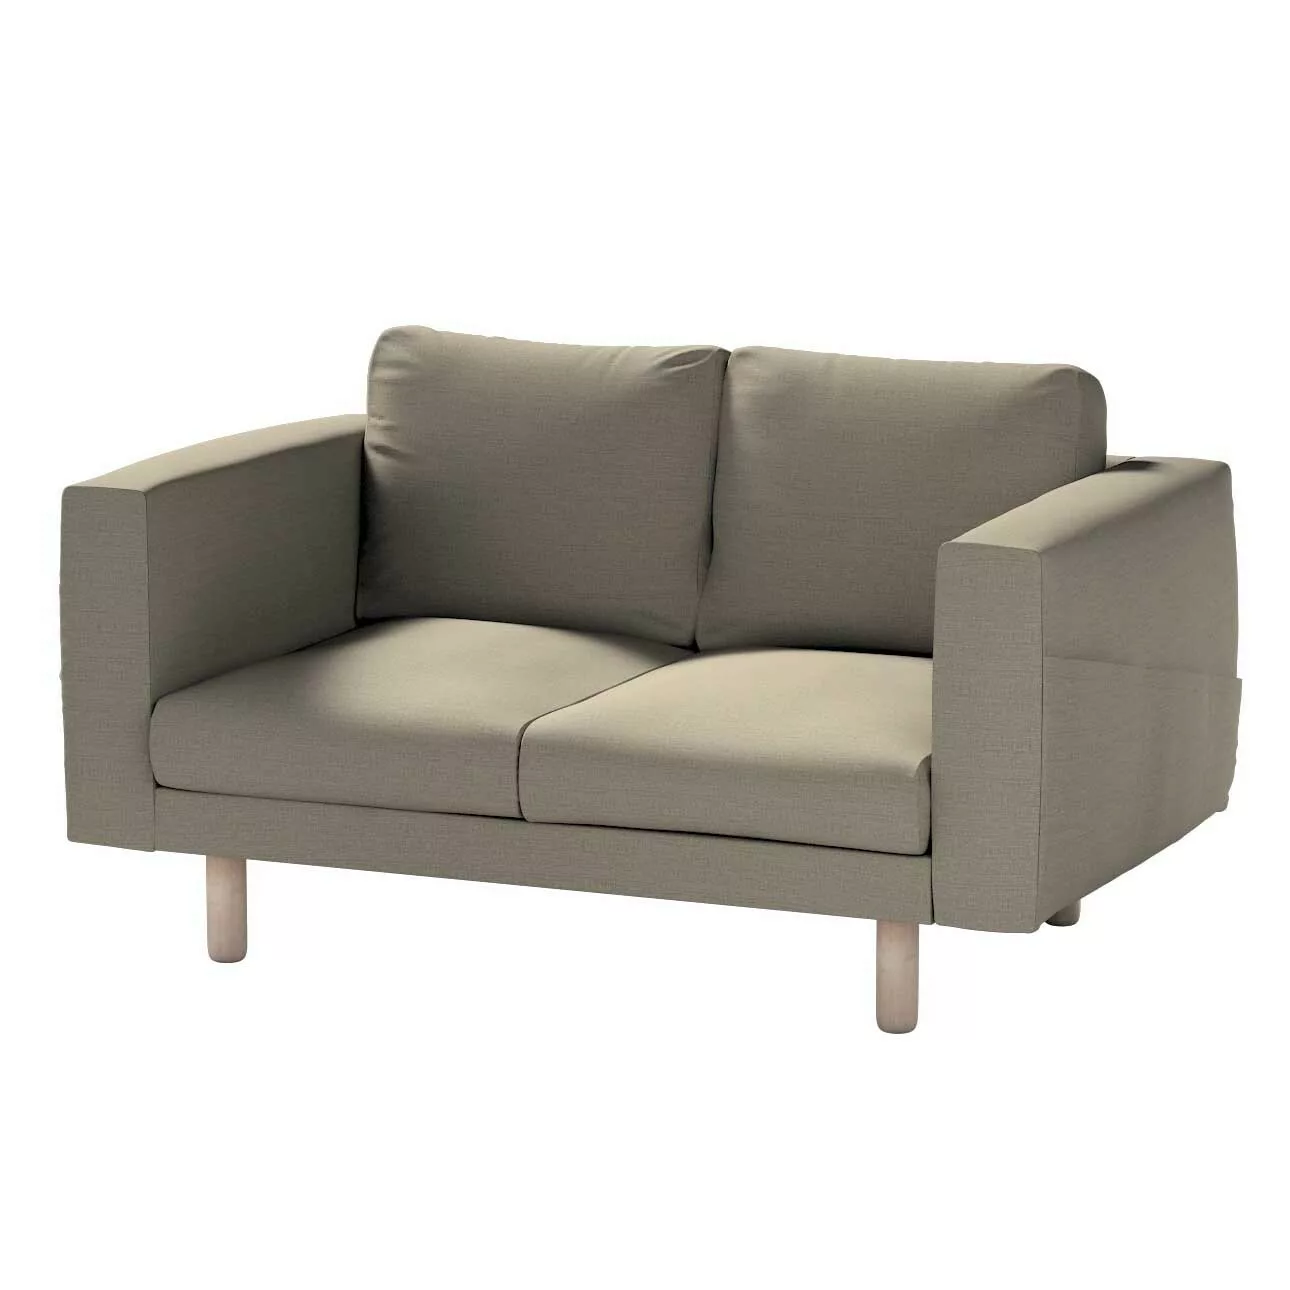 Bezug für Norsborg 2-Sitzer Sofa, beige-grau, Norsborg 2-Sitzer Sofabezug, günstig online kaufen